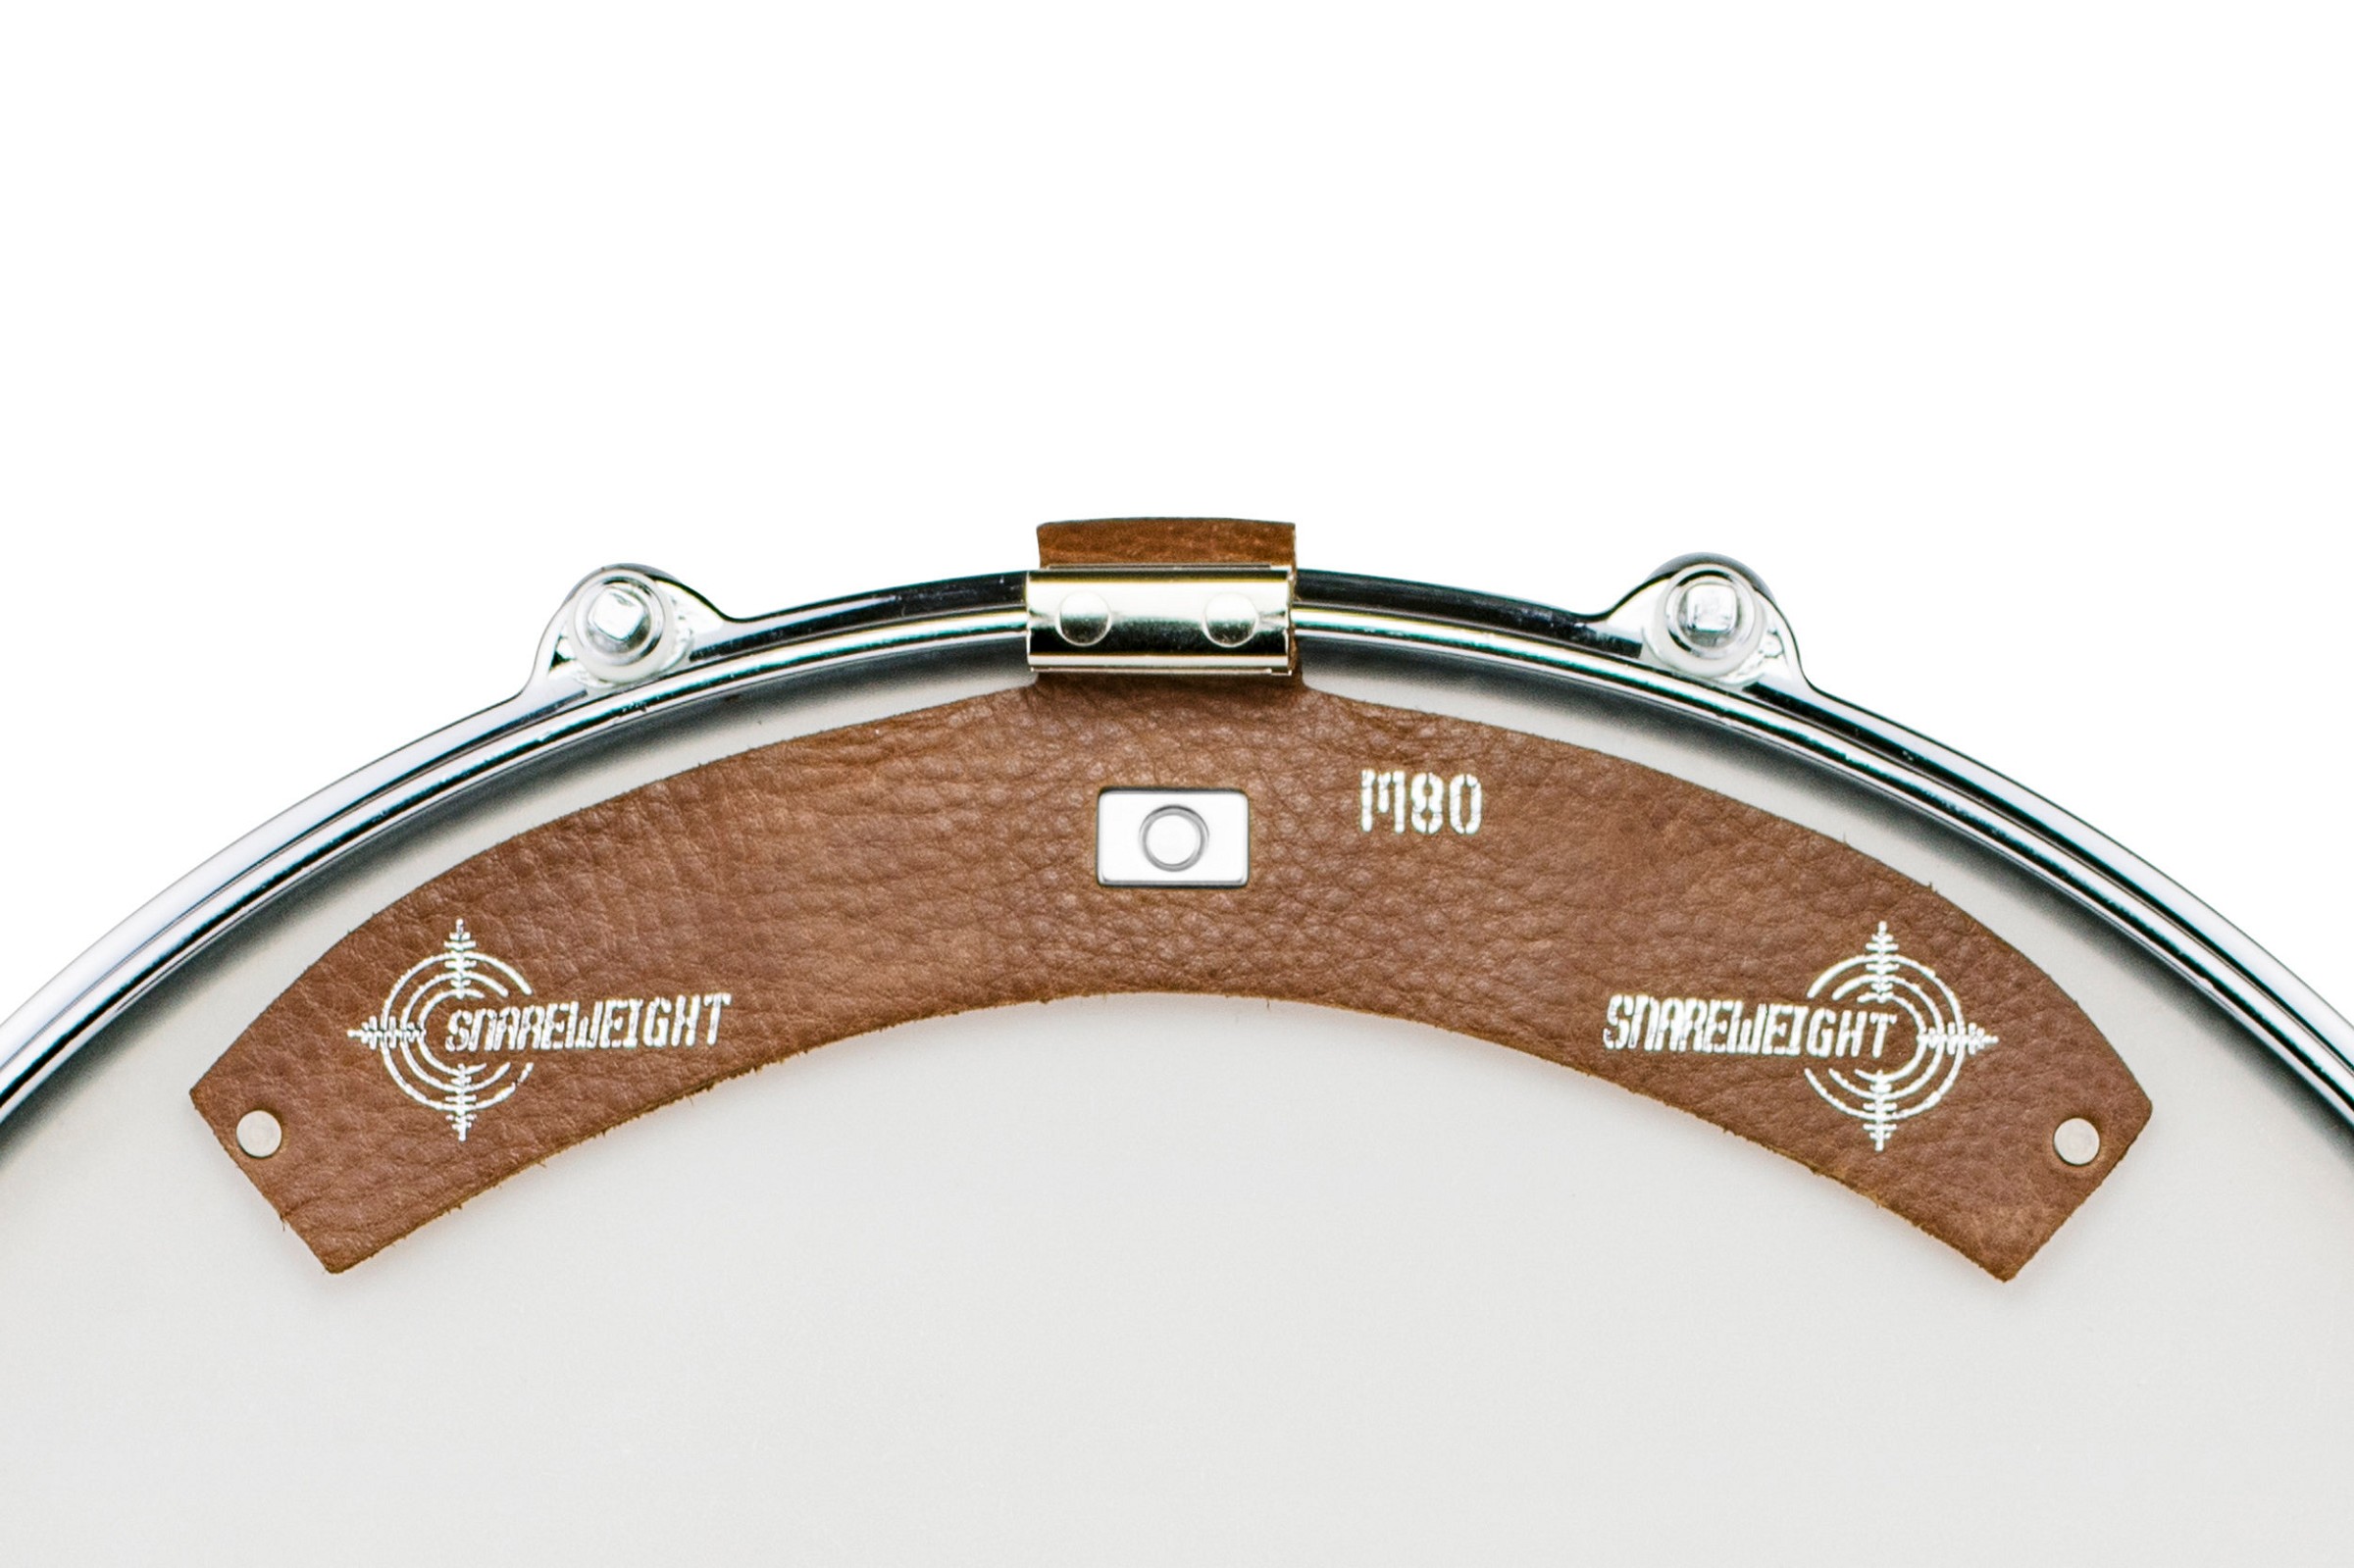 Snareweight M80 Magnetic Drumdämpfer brown Leder